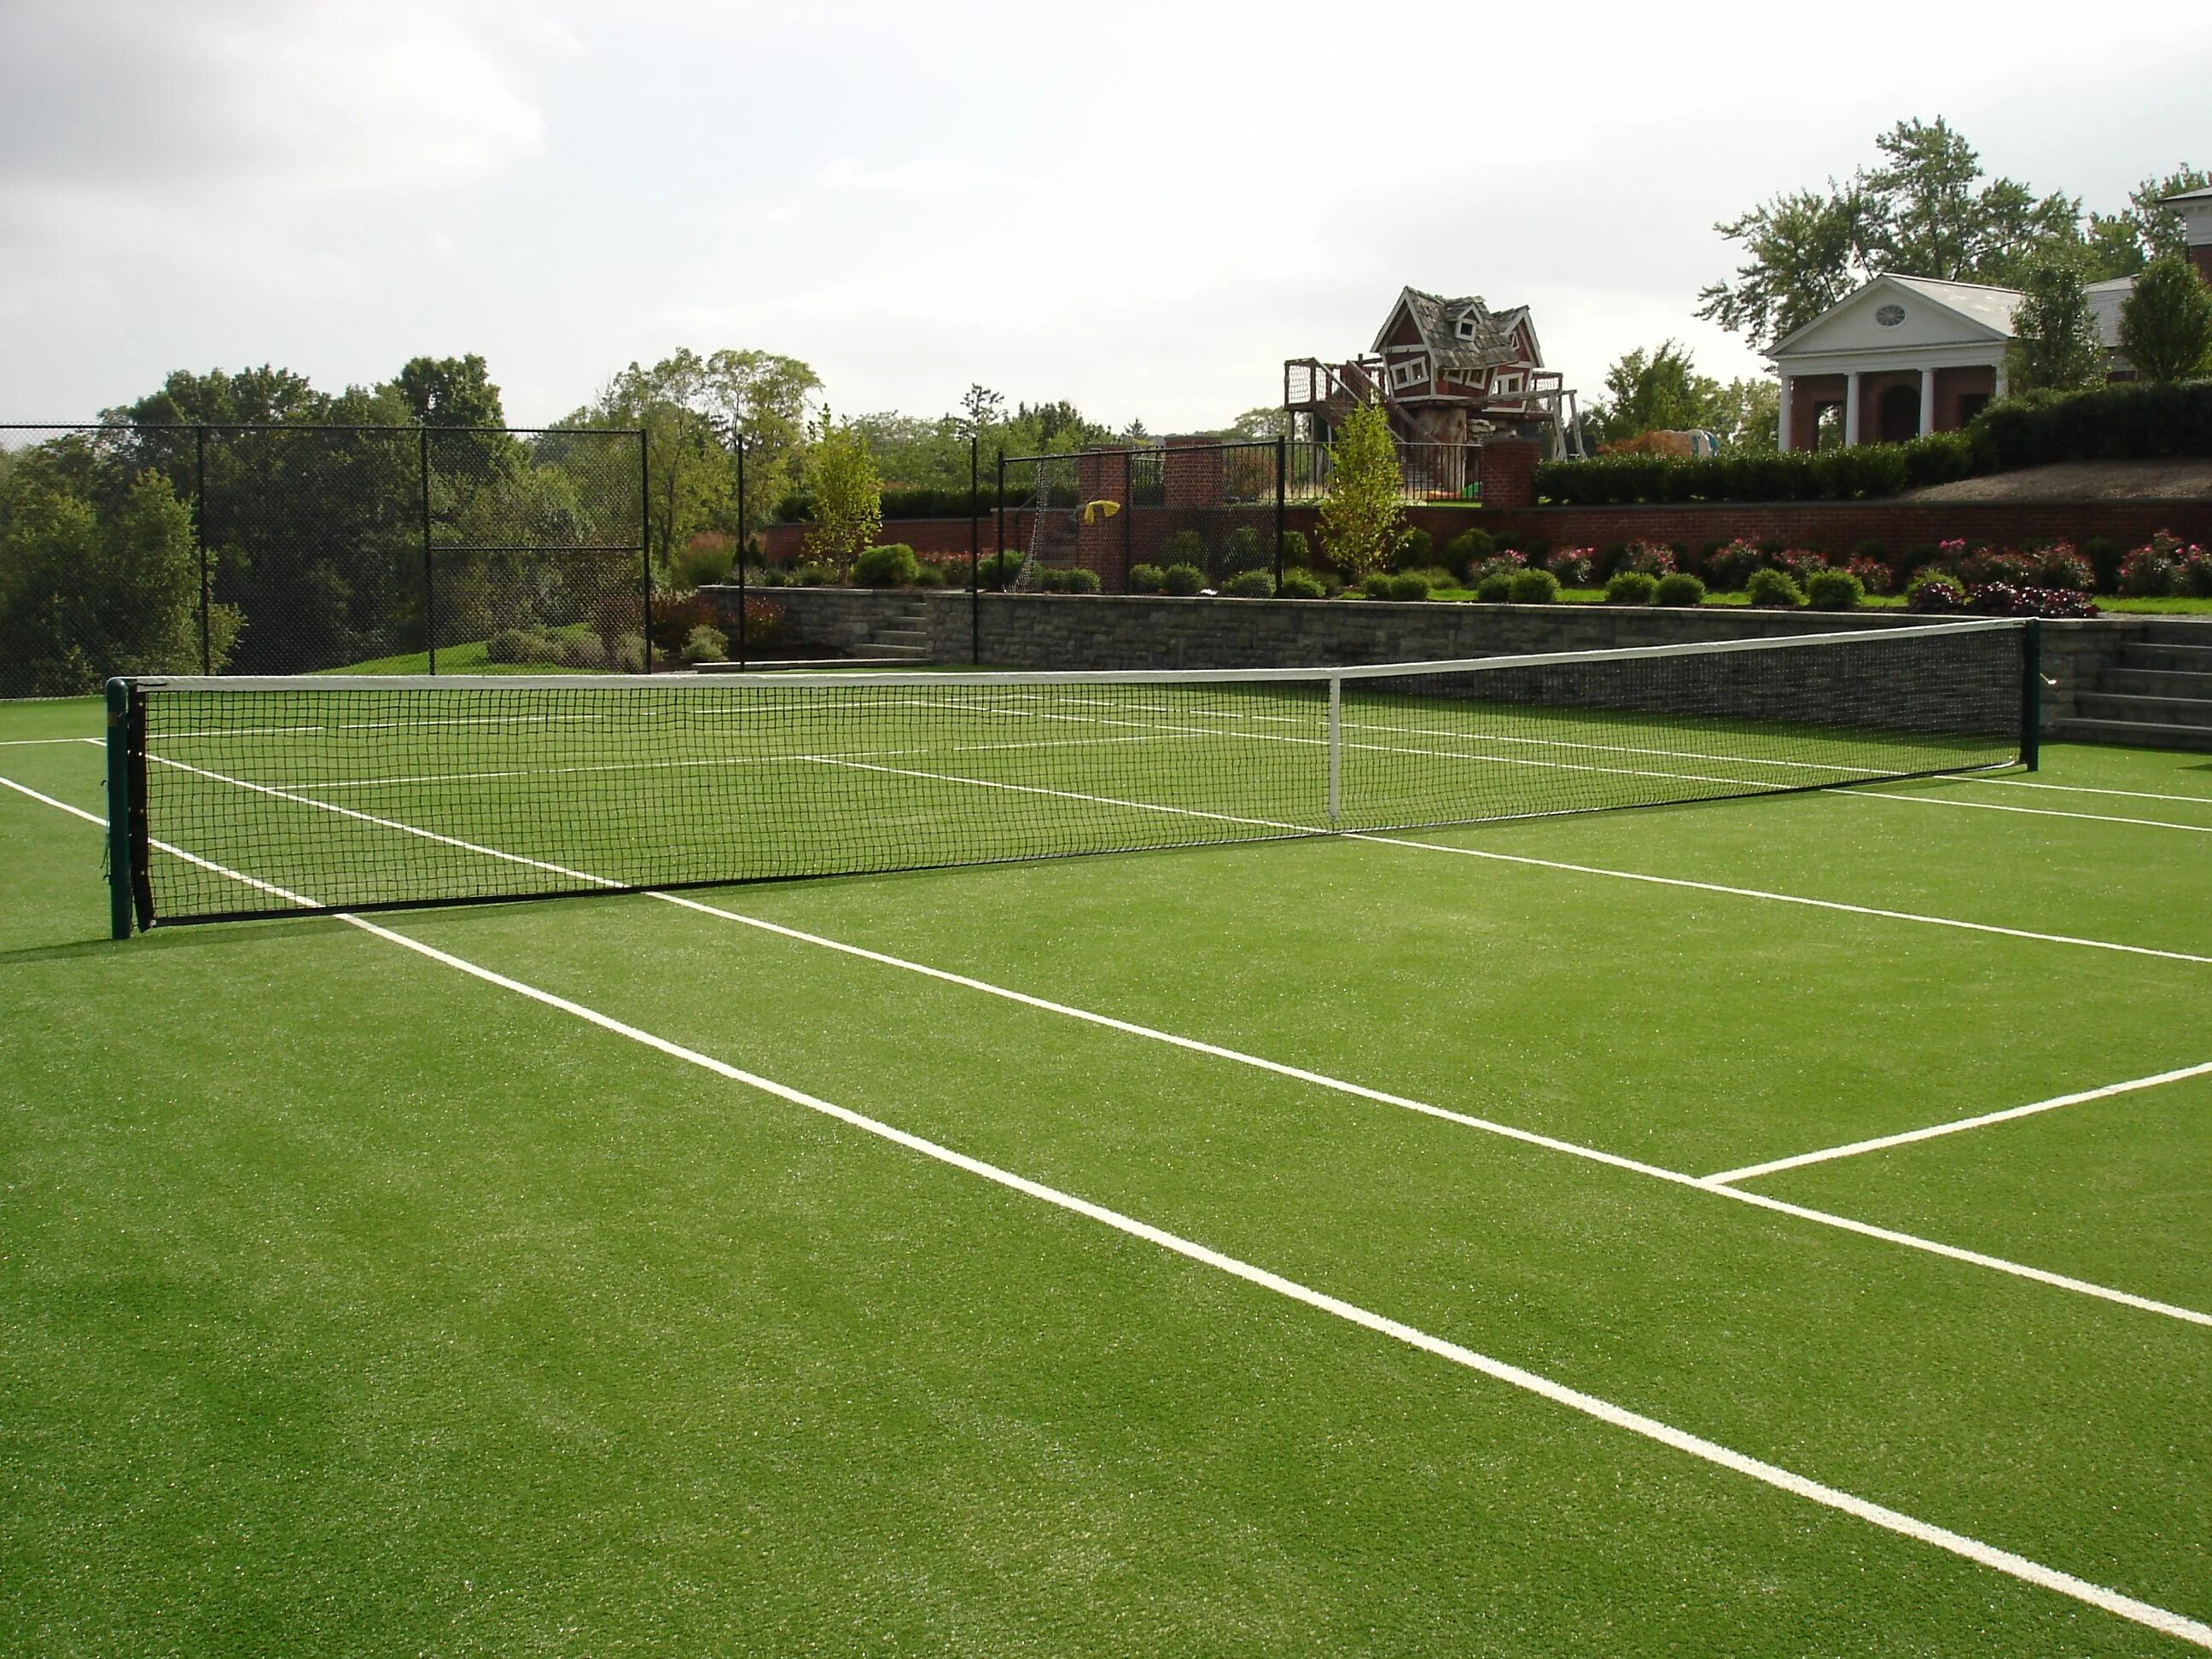 Какое поле теннисный. Теннисный корт трава. Покрытие теннисного корта трава. Травяной корт для тенниса. Искусственная трава 20мм теннисный корт.